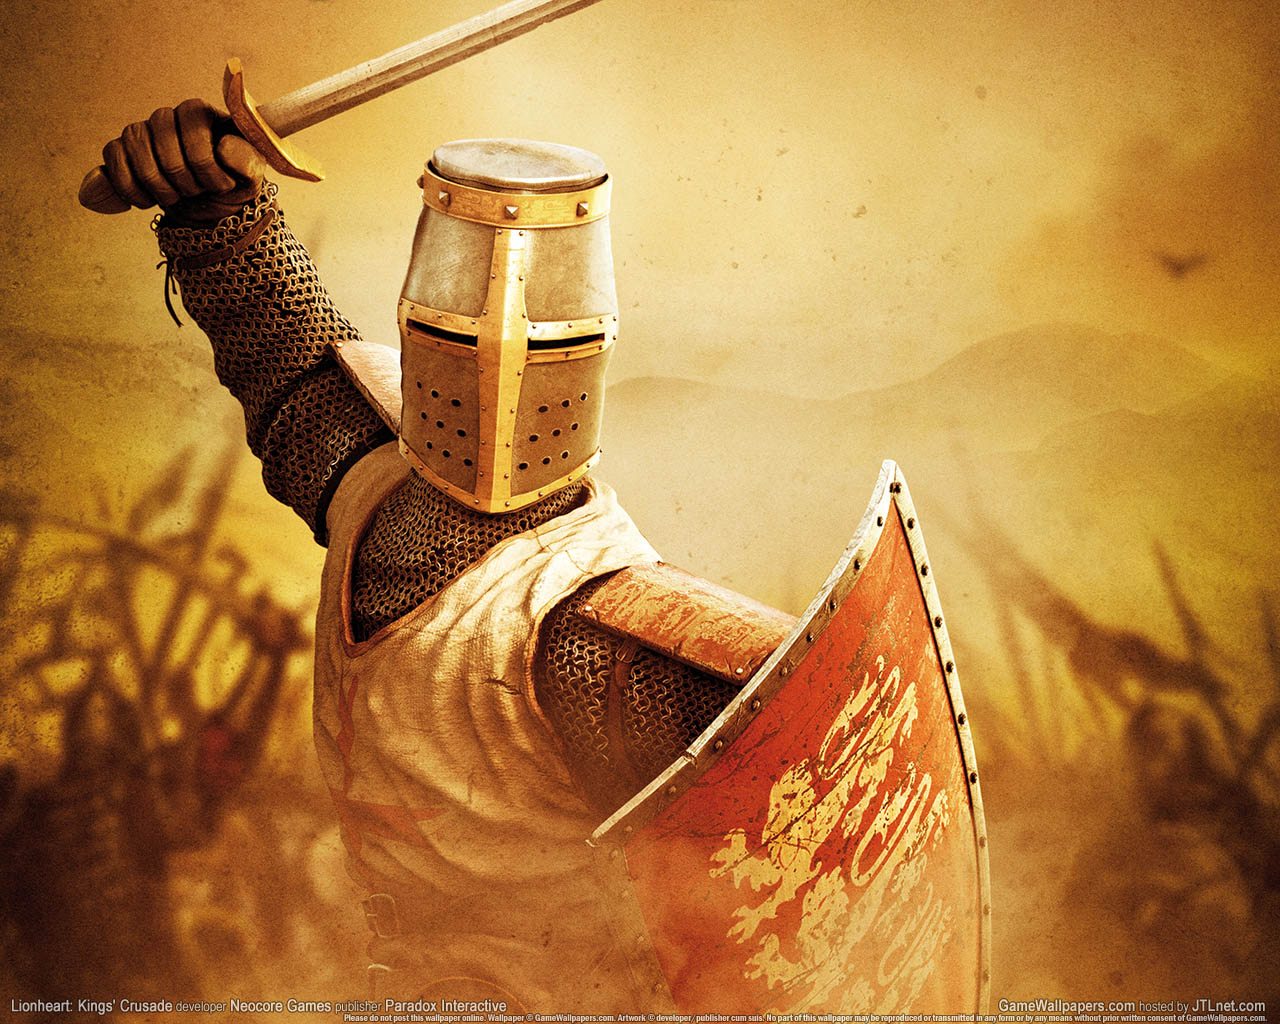 Lionheart: Kings' Crusade wallpaper 01 1280x1024